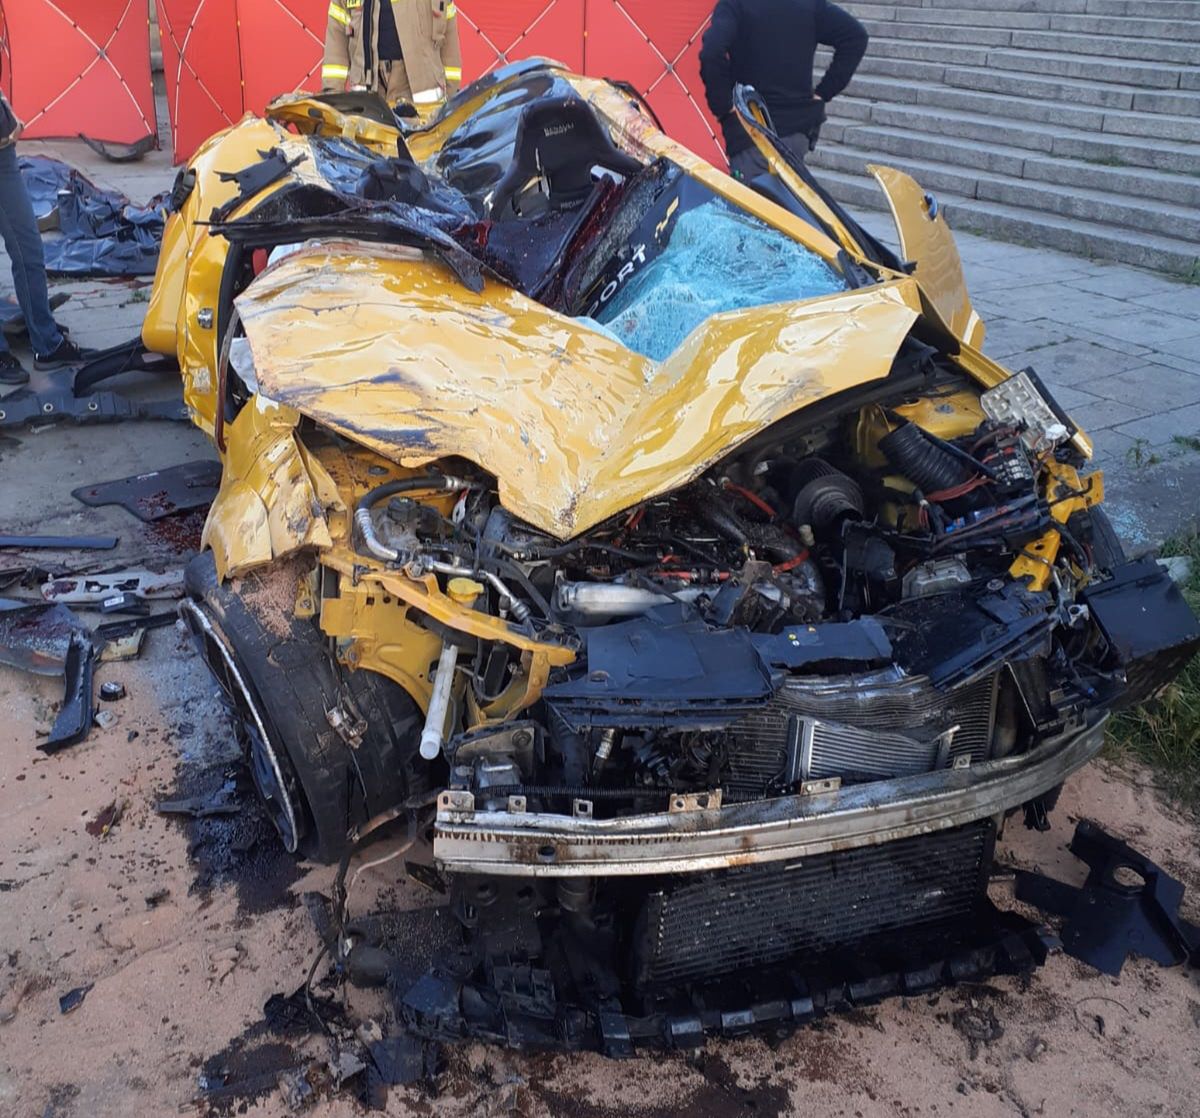 Tak wyglądała żółta meganka po wypadku w Krakowie. Kierowca i pasażerowie nie mieli szans